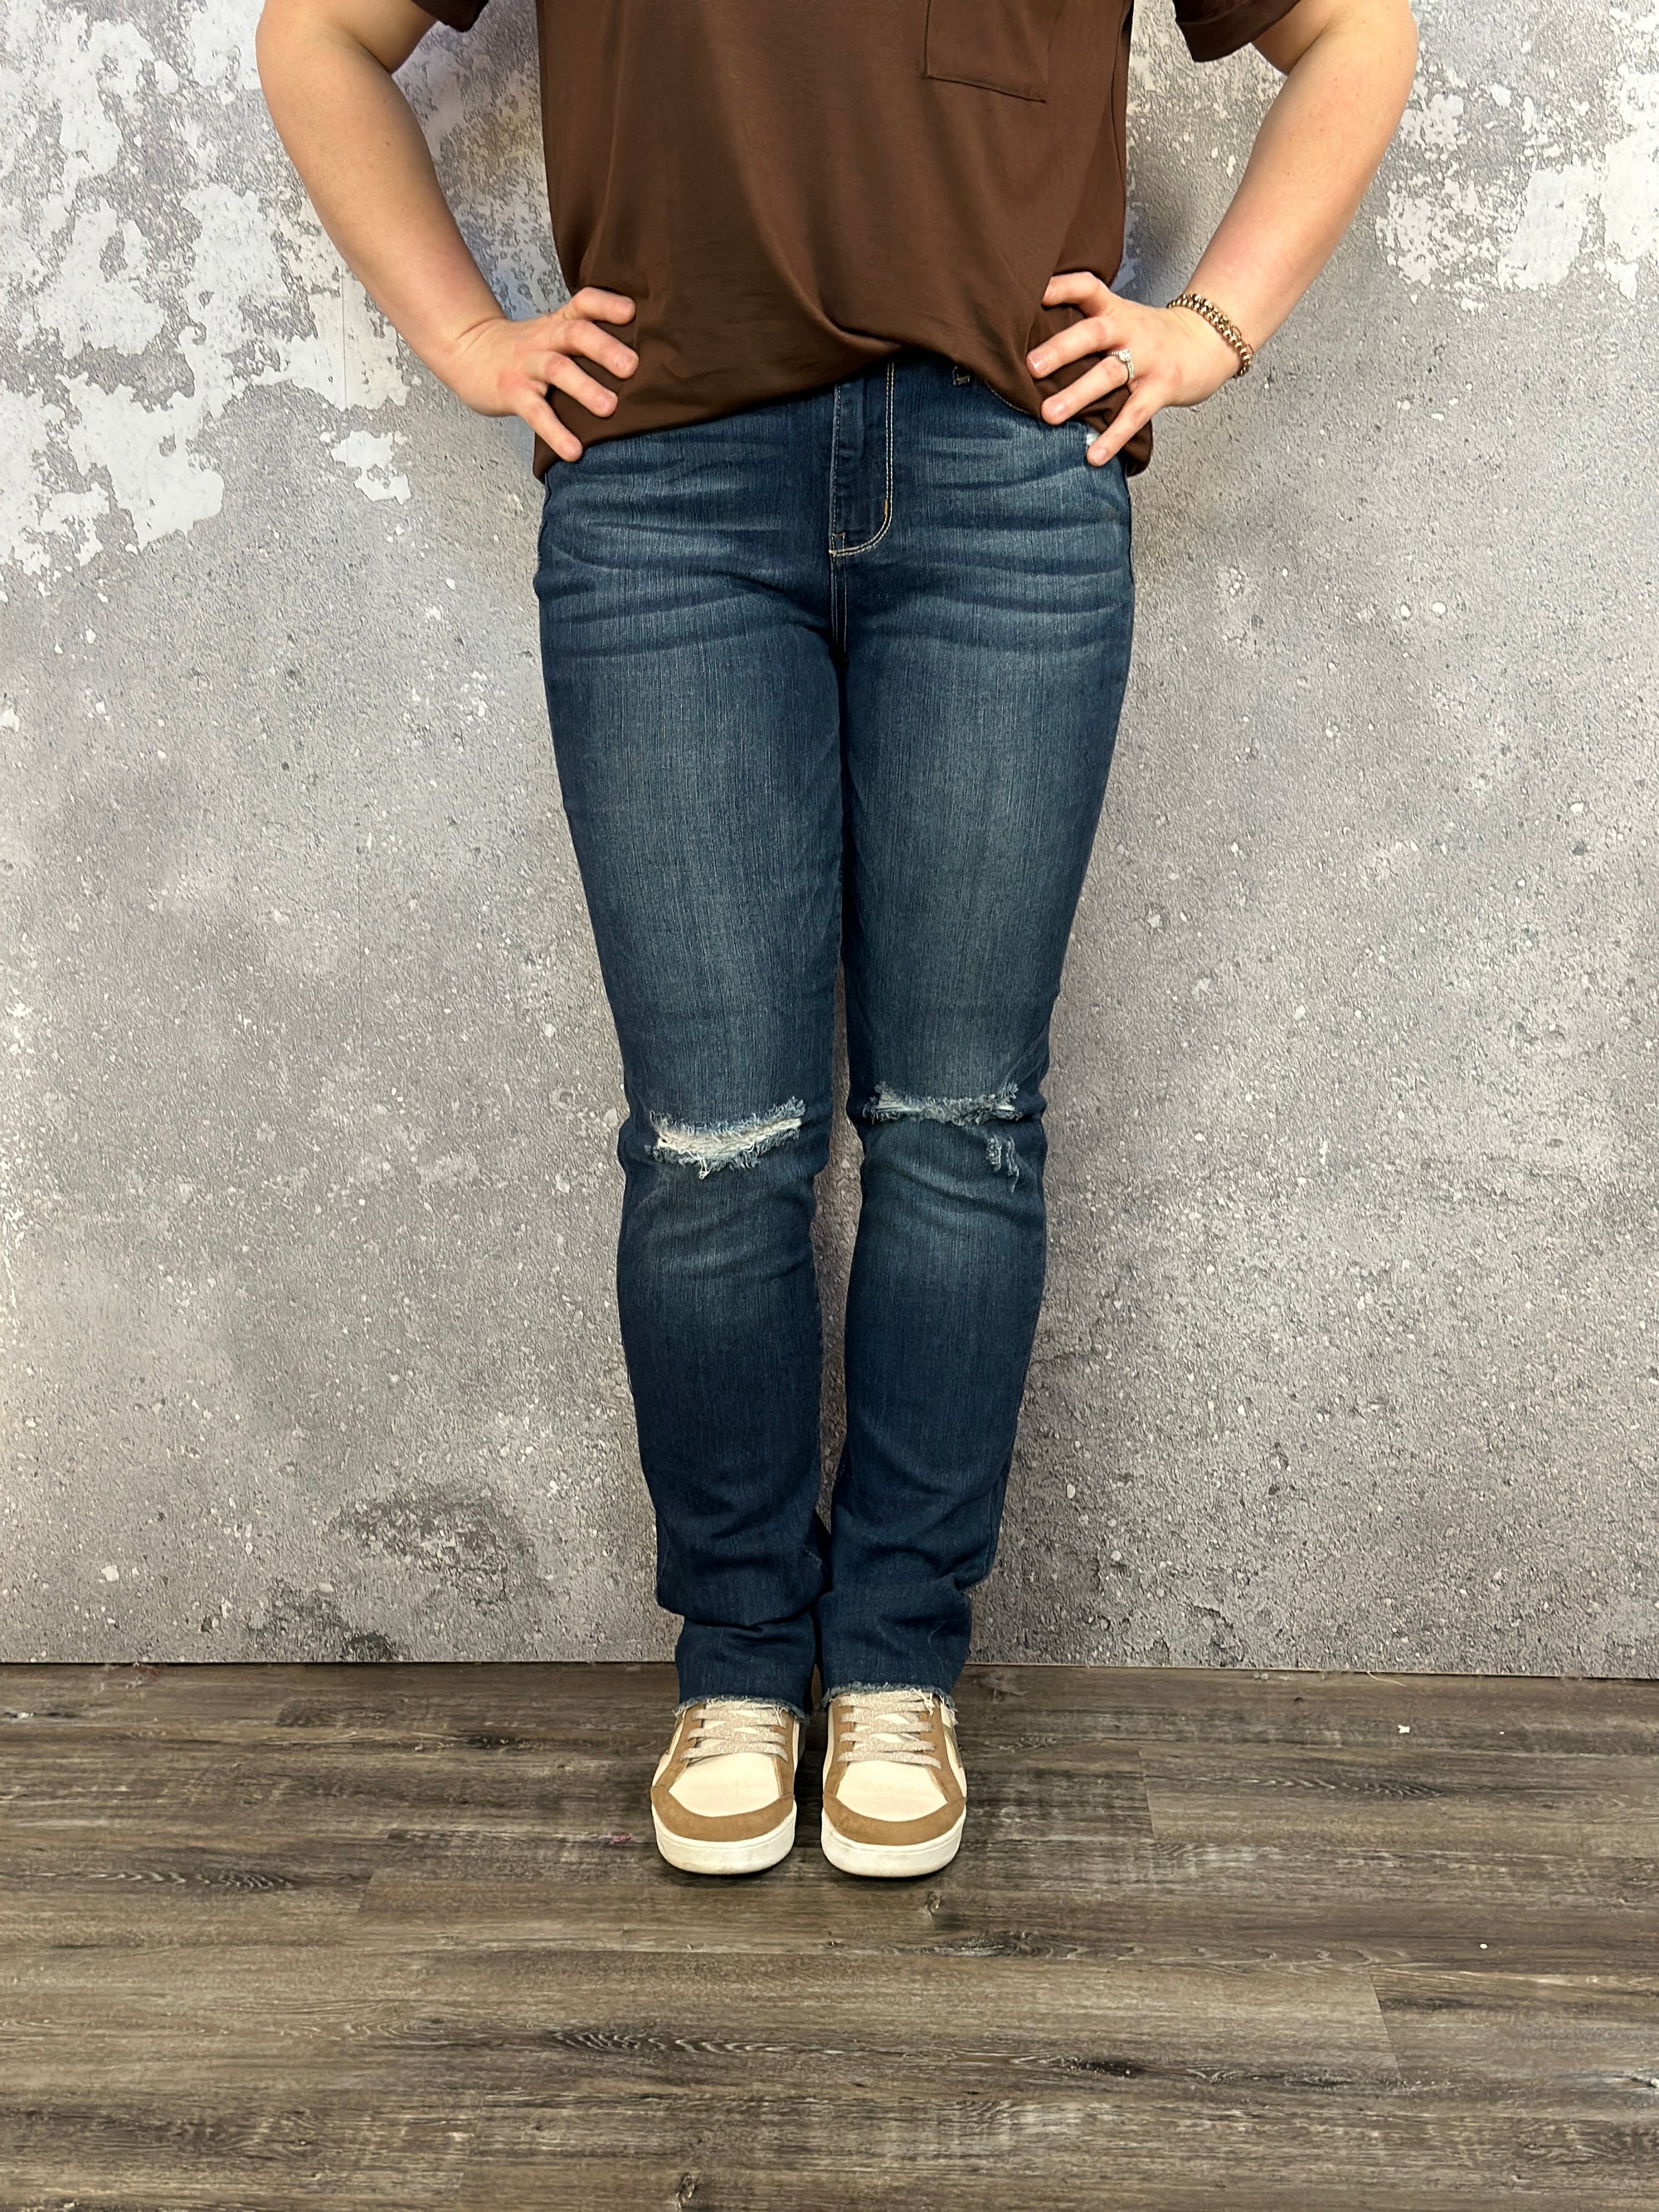 Judy Blue Straight Fit Long Inseam Jean  (sizes 26-22W) - FINAL SALE